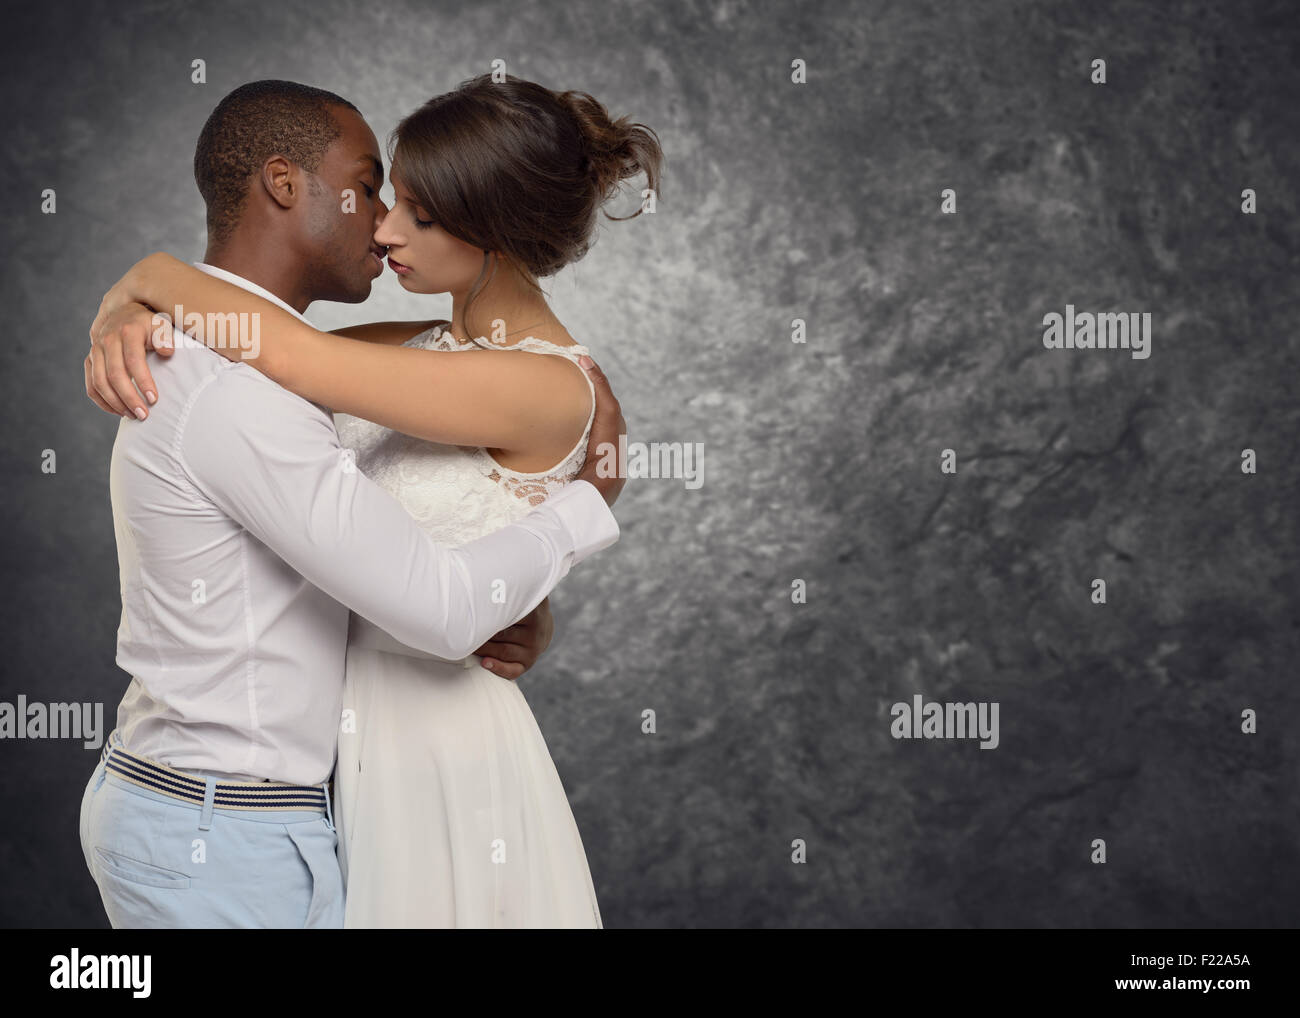 Junge Paar tief in Liebe zu umarmen und küssen sich leidenschaftlich in ein bewegender Moment, Seite Ansicht Oberkörper von wenigen Rassen Stockfoto